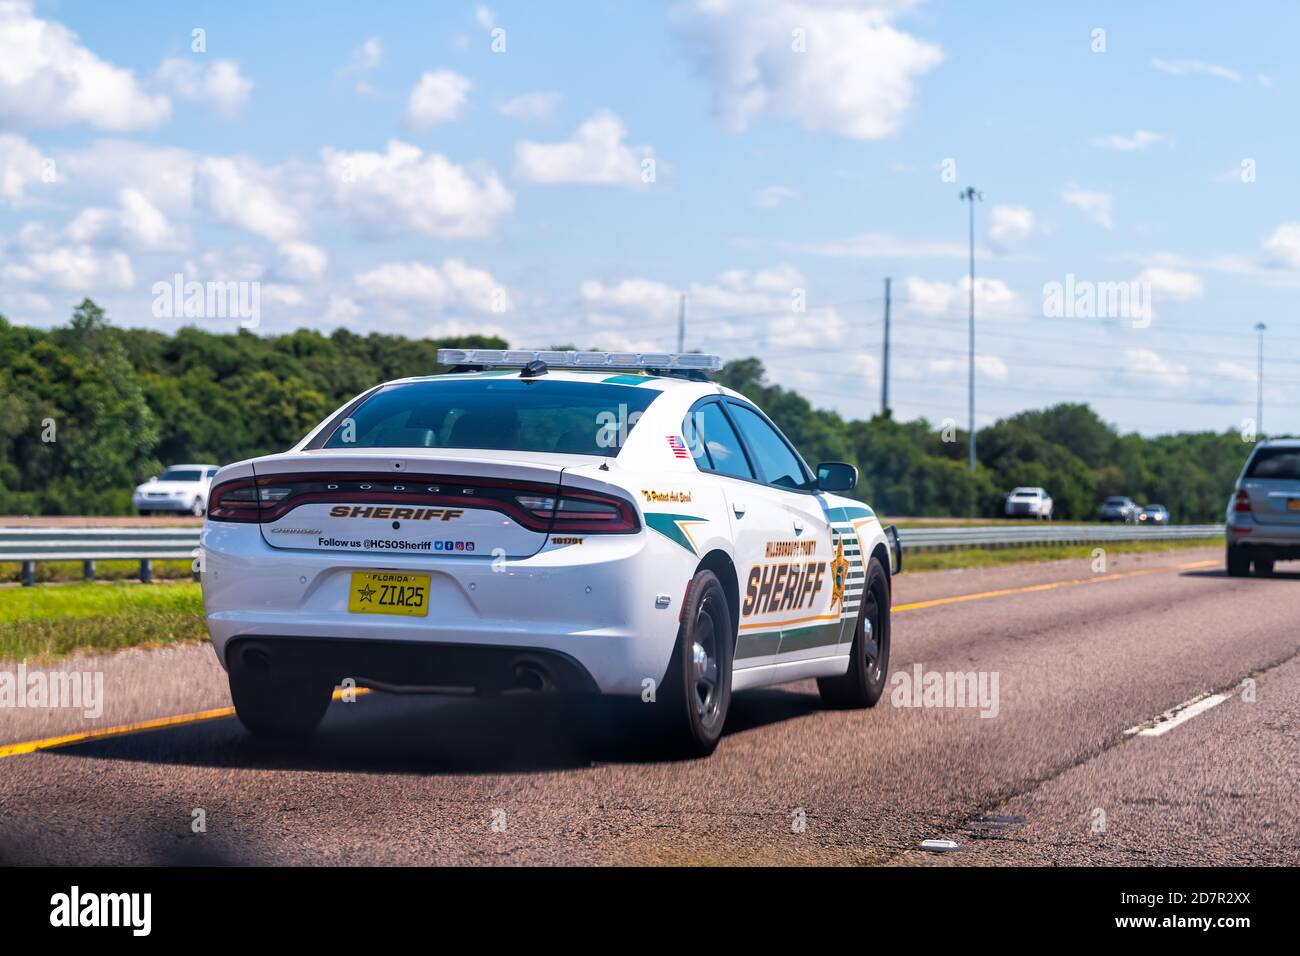 Gibsonton, USA - 27. April 2018: Florida Autobahn Straße in der Nähe von Tampa mit Verkehr Sheriff Polizei Auto Schild an sonnigen Tag Stockfoto